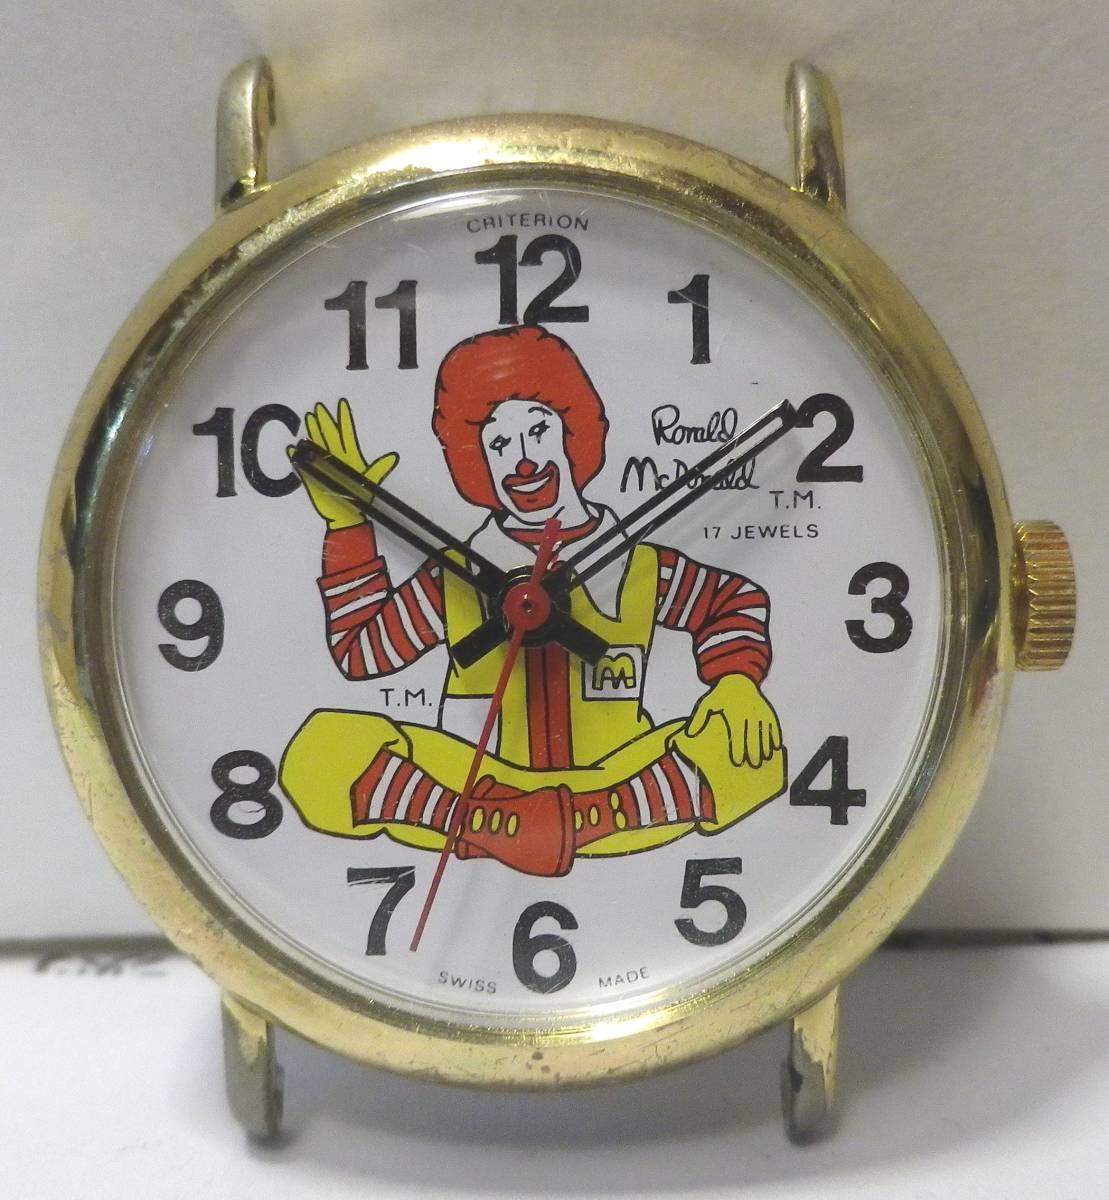 79* античный McDONALD\'S Дональд * McDonald's герой Watch использование возможно редкость CRITERION]